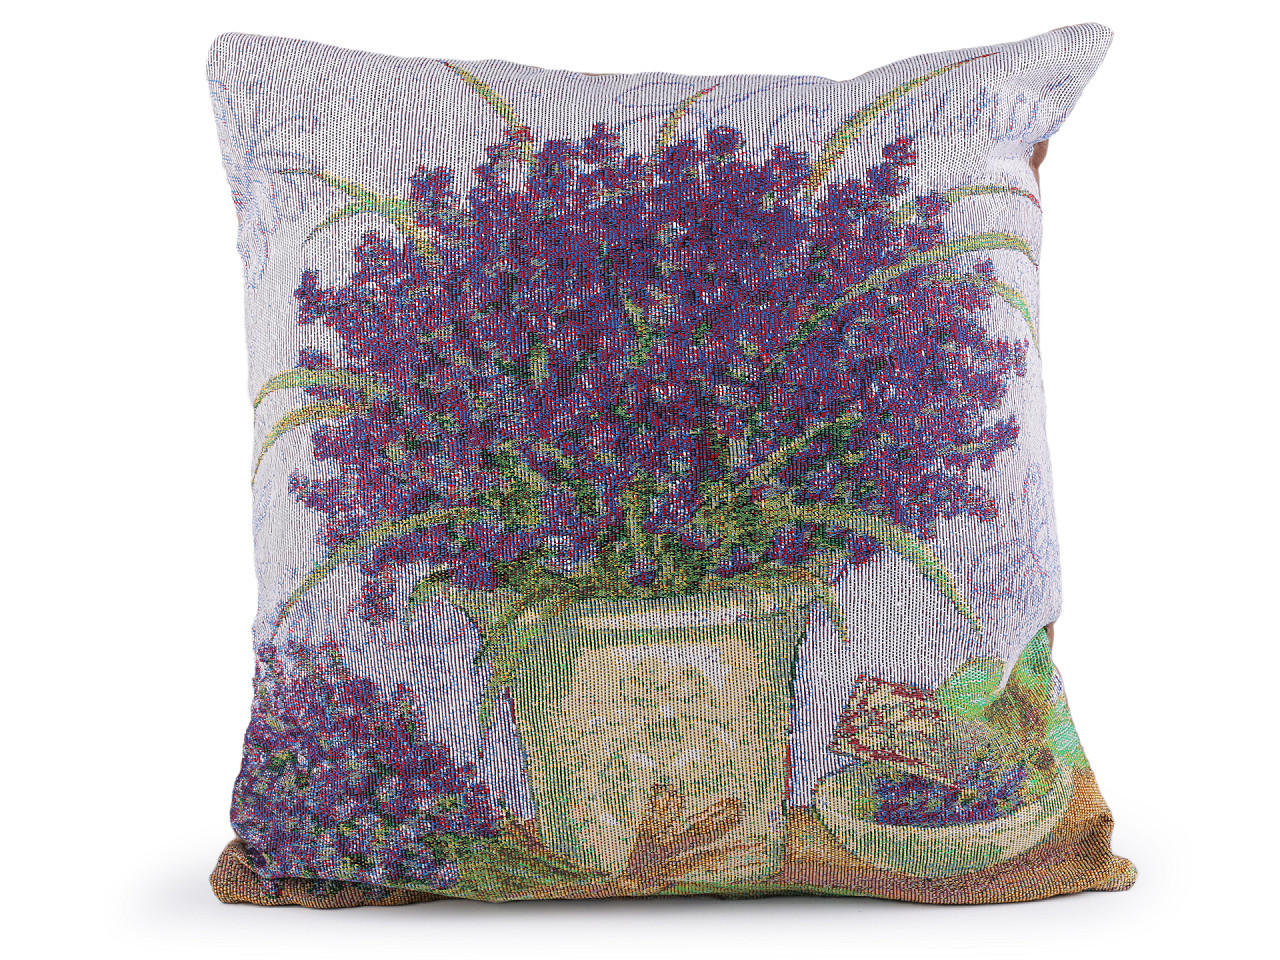 Gobelínový povlak na polštář levandule, květy 45x45 cm, barva 1 fialová levandule